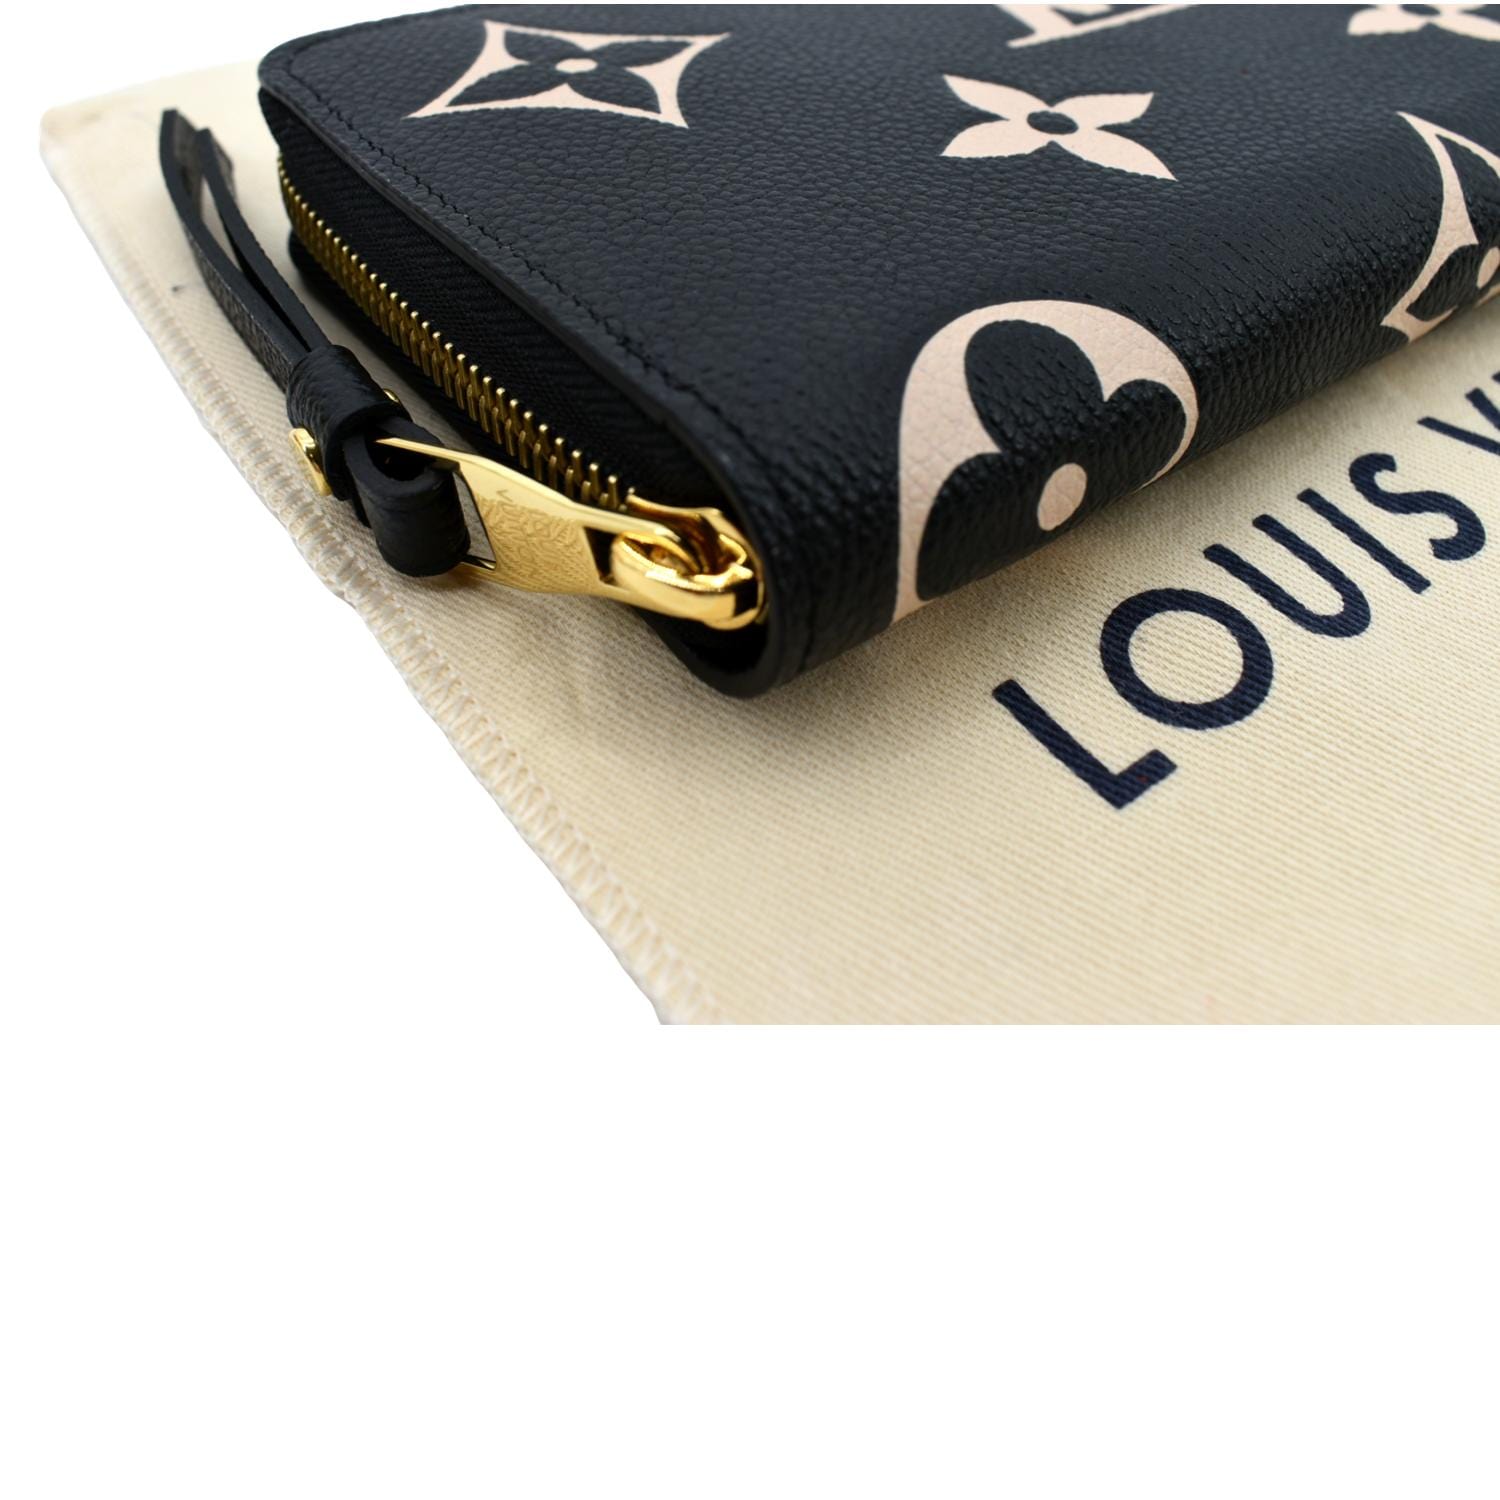 Authentic Louis Vuitton Wallet  Louis vuitton wallet, Wallet, Louis vuitton